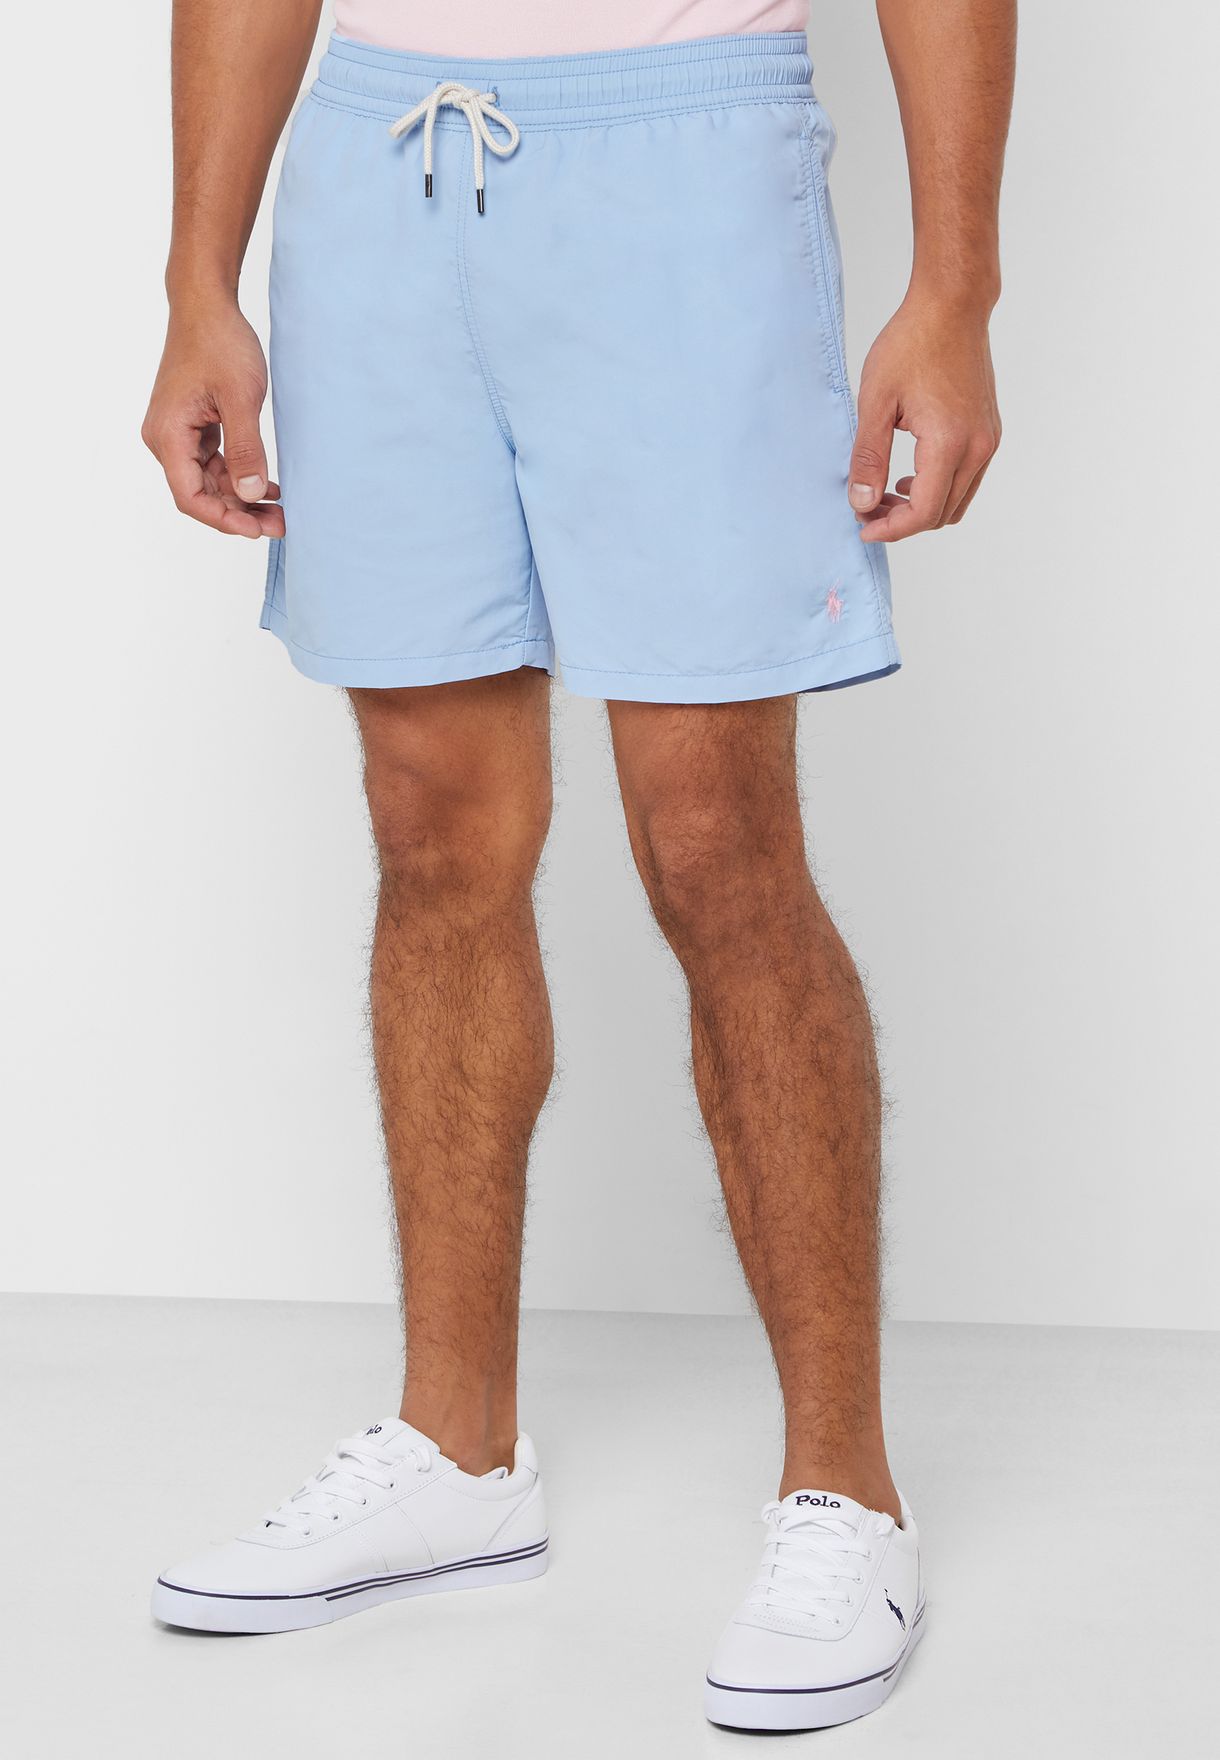 ralph lauren blue shorts